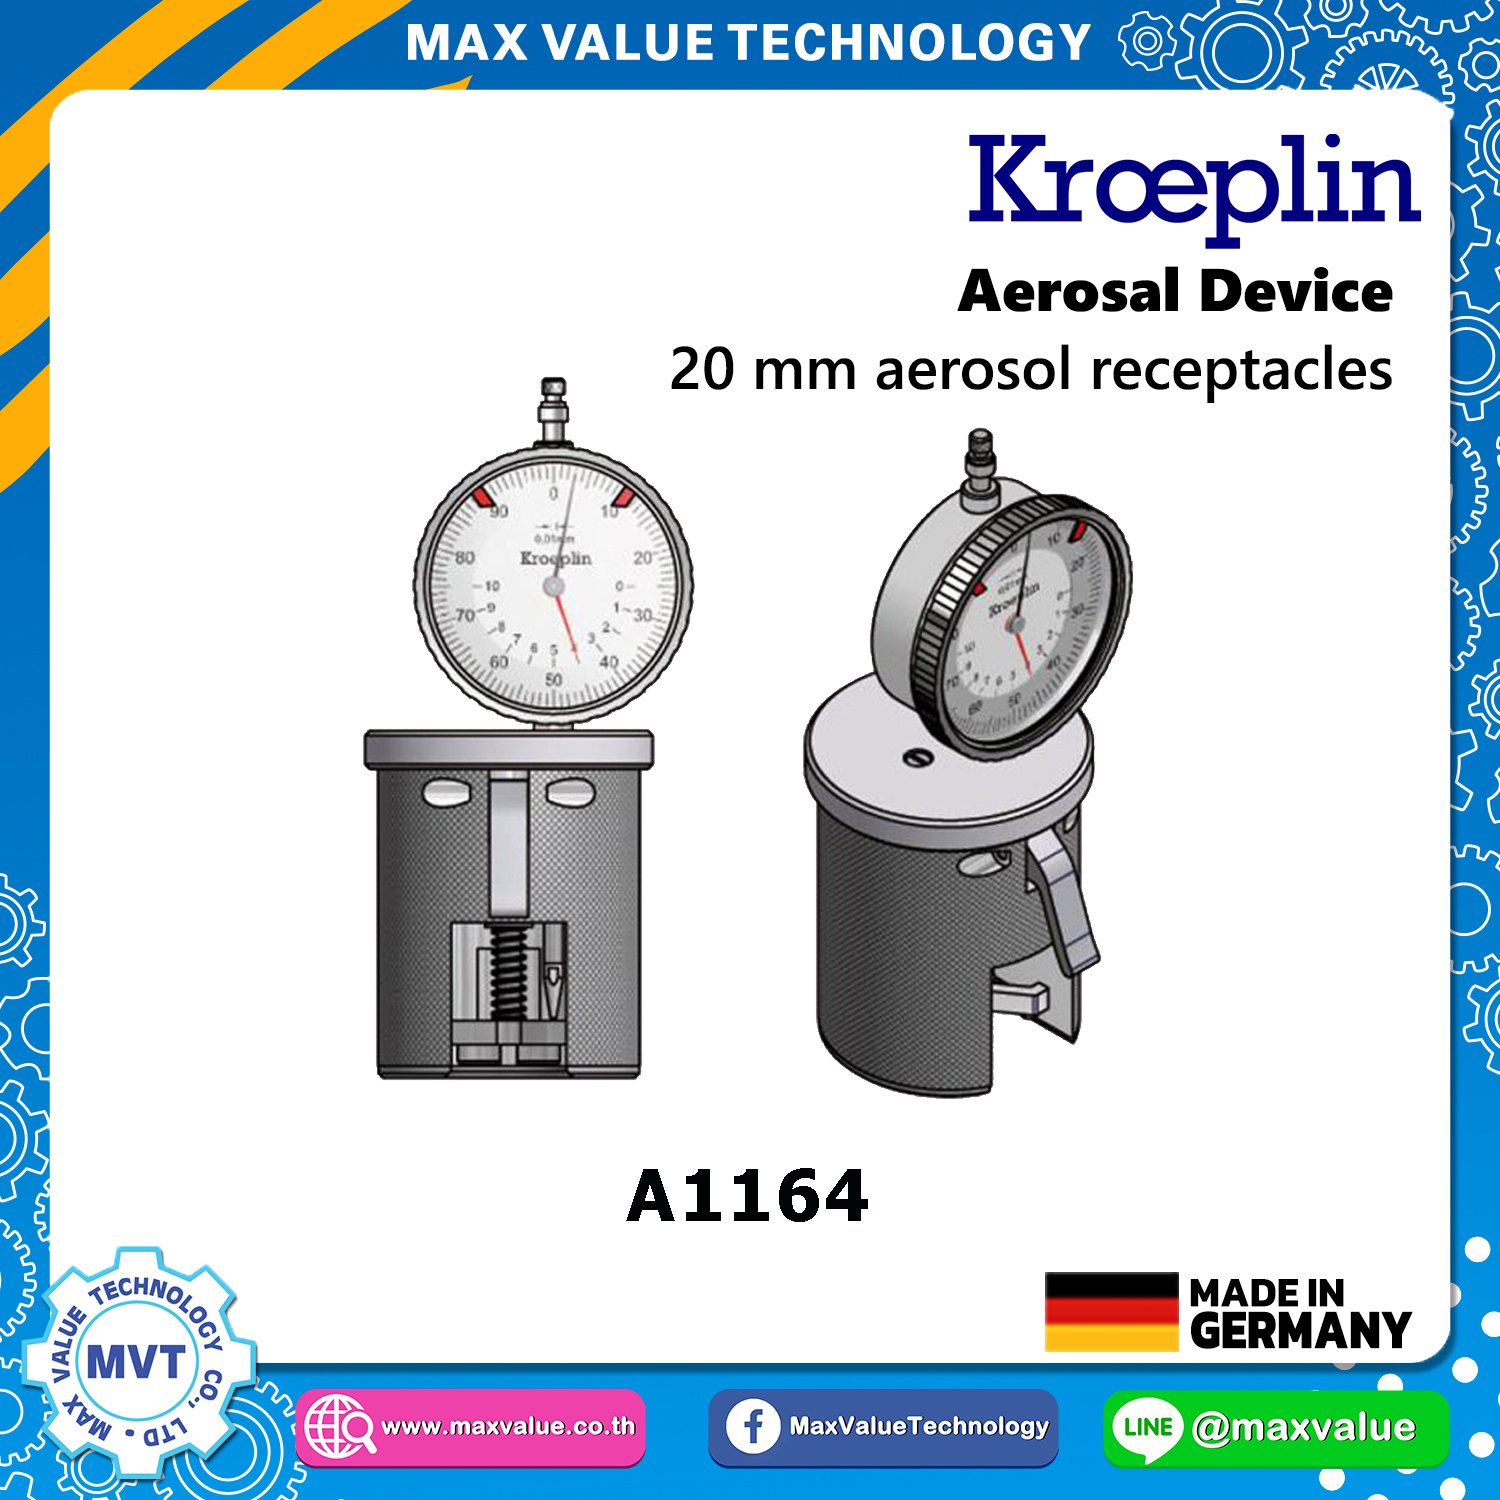 A1164/AE1164 - Aerosol devices - 20 mm aerosol receptacles